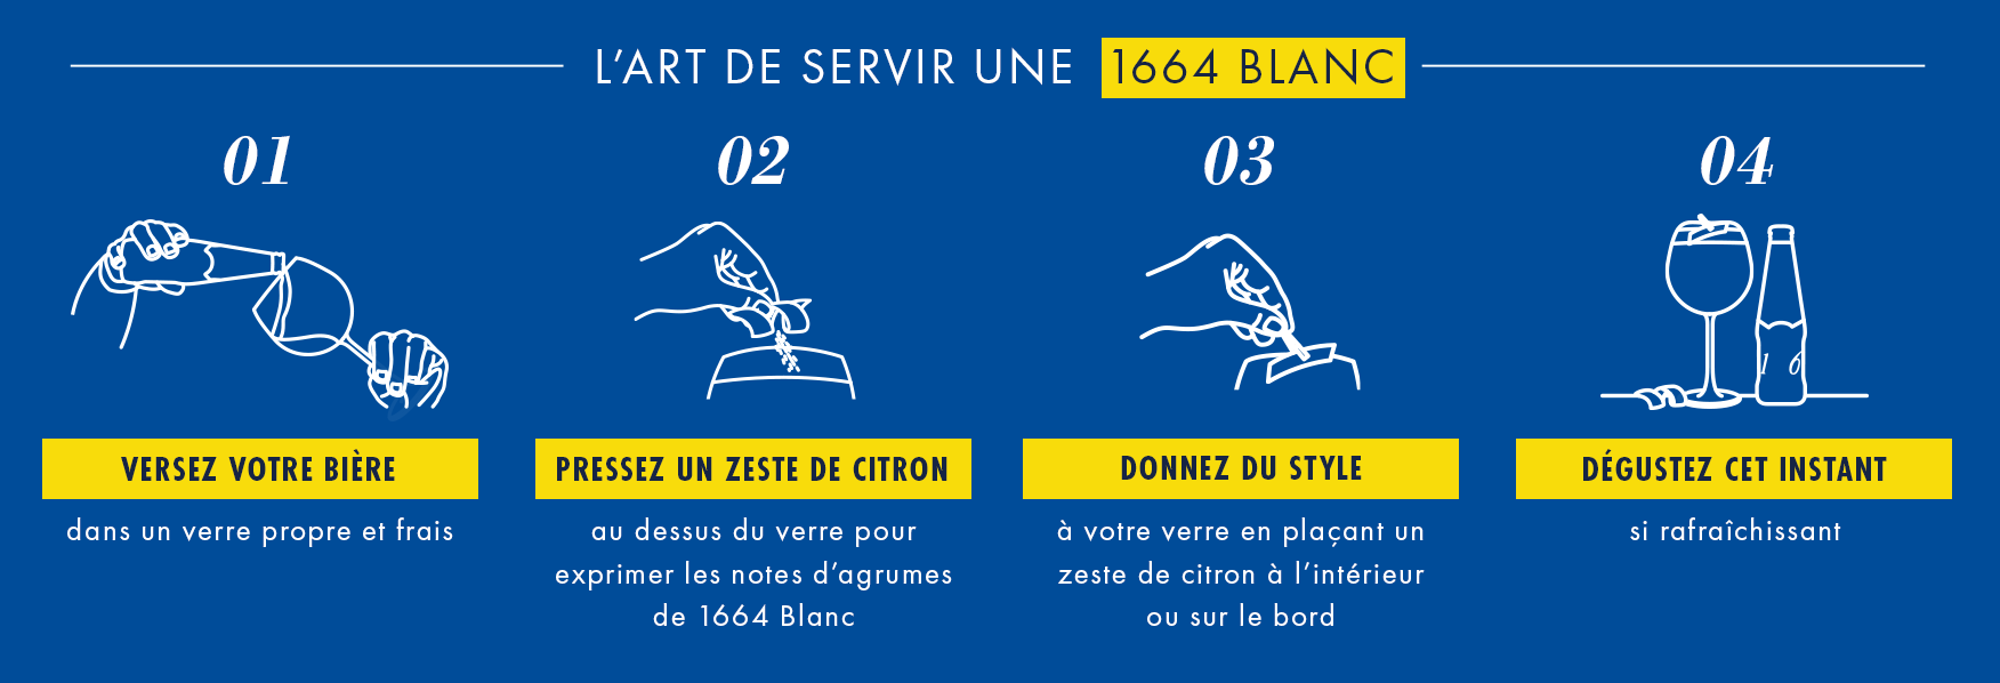 1664 Blanc 00 Bannières Fin